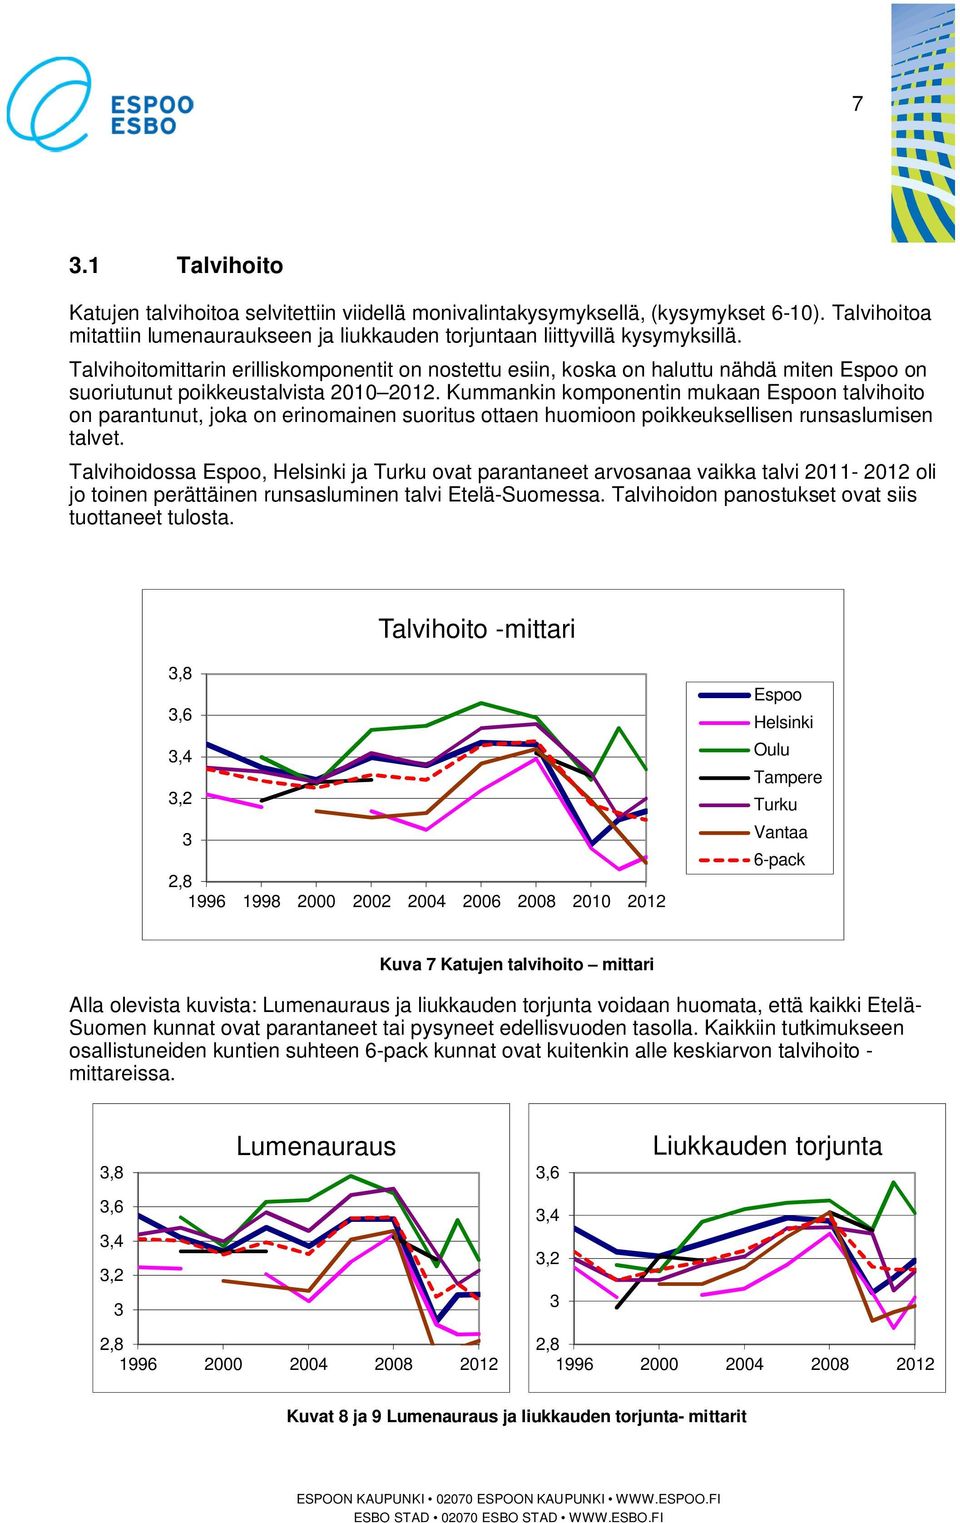 Kummankin komponentin mukaan Espoon talvihoito on parantunut, joka on erinomainen suoritus ottaen huomioon poikkeuksellisen runsaslumisen talvet.